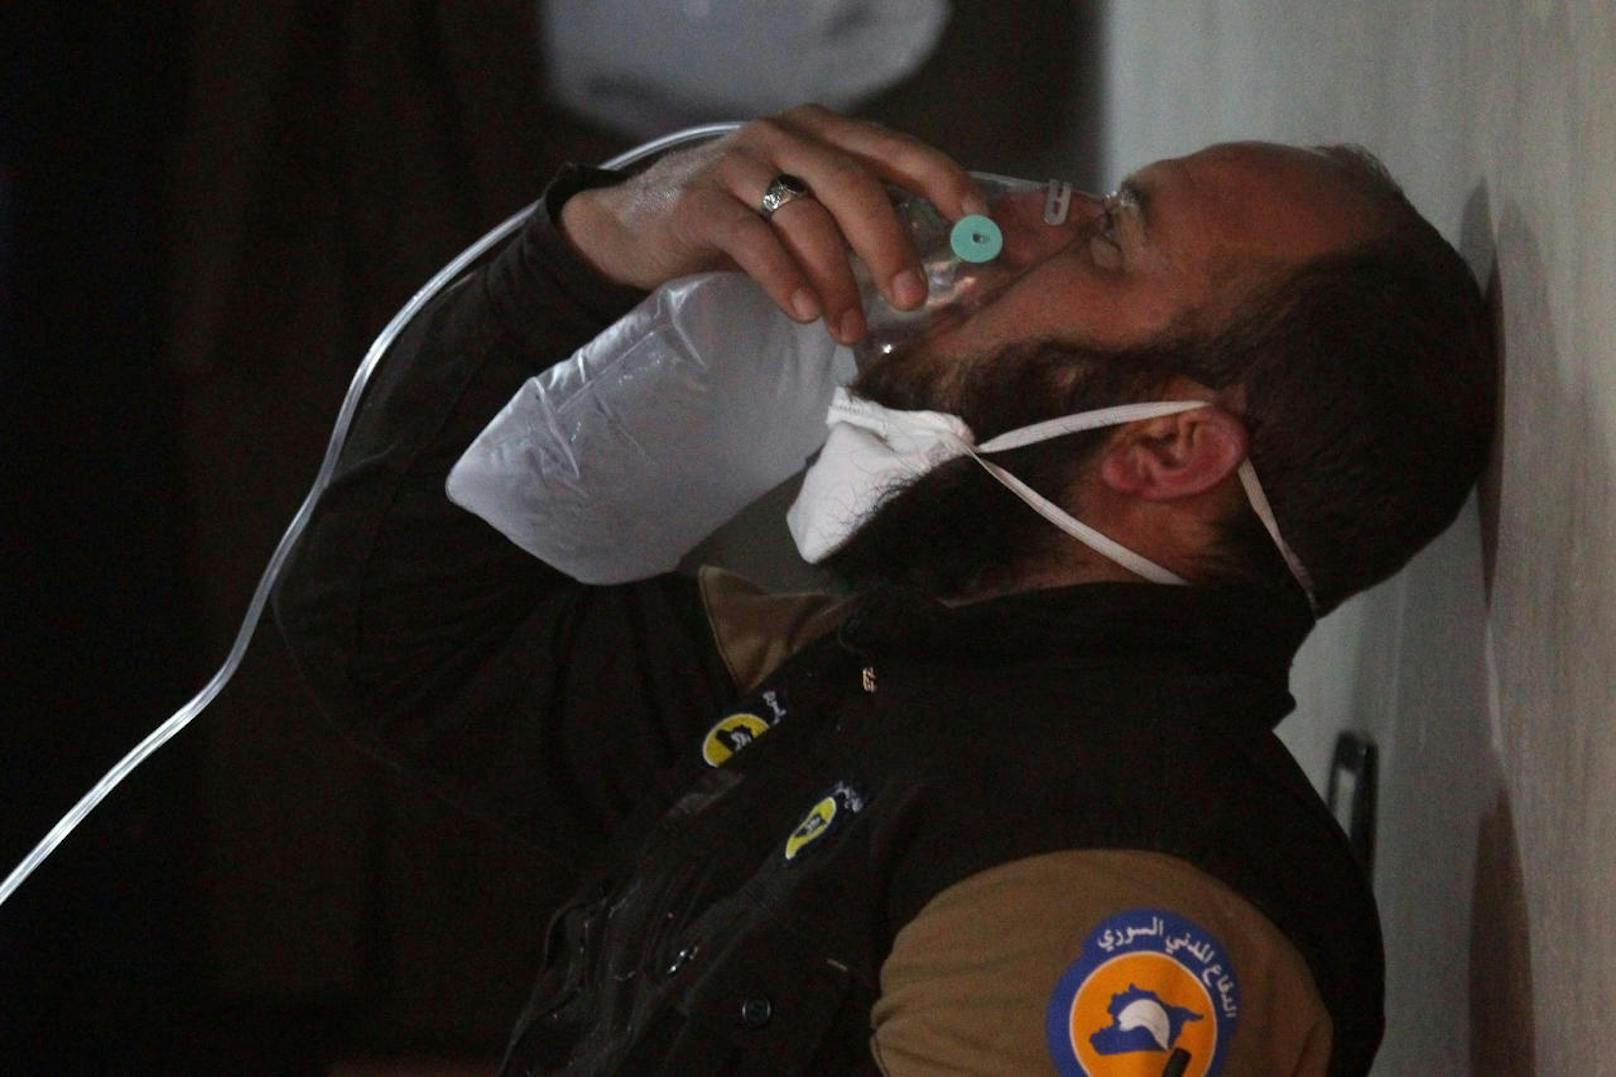 <b>4. April 2017:</b> Im blutigen<b> Bürgerkrieg Syriens</b> ließ Machthaber Assad die Rebellenstadt Chan Schaichun mit dem <b>Giftgas Sarin </b>bombardieren. Mindestens 80 Menschen wurden getötet, Hunderte weitere kamen mit dem Kampfstoff in Berührung. Die Bilder nach dem Angriff schockten die Welt: Der Boden war übersät mit Leichen, darunter auch mehrere Kinder. Die Überlebenden versuchten das Gift mit Wasser von den Häusern und Böden zu waschen. Auch ein kleines Mädchen wurde gefilmt, das Schaum vor dem Mund hatte und beatmet wurde. 

<b>Mehr Infos: </b> <a href="https://www.heute.at/welt/news/story/Einsatz-von-Sarin-in-Syrien-nachgewiesen-48515794">Einsatz von Sarin in Syrien nachgewiesen</a>